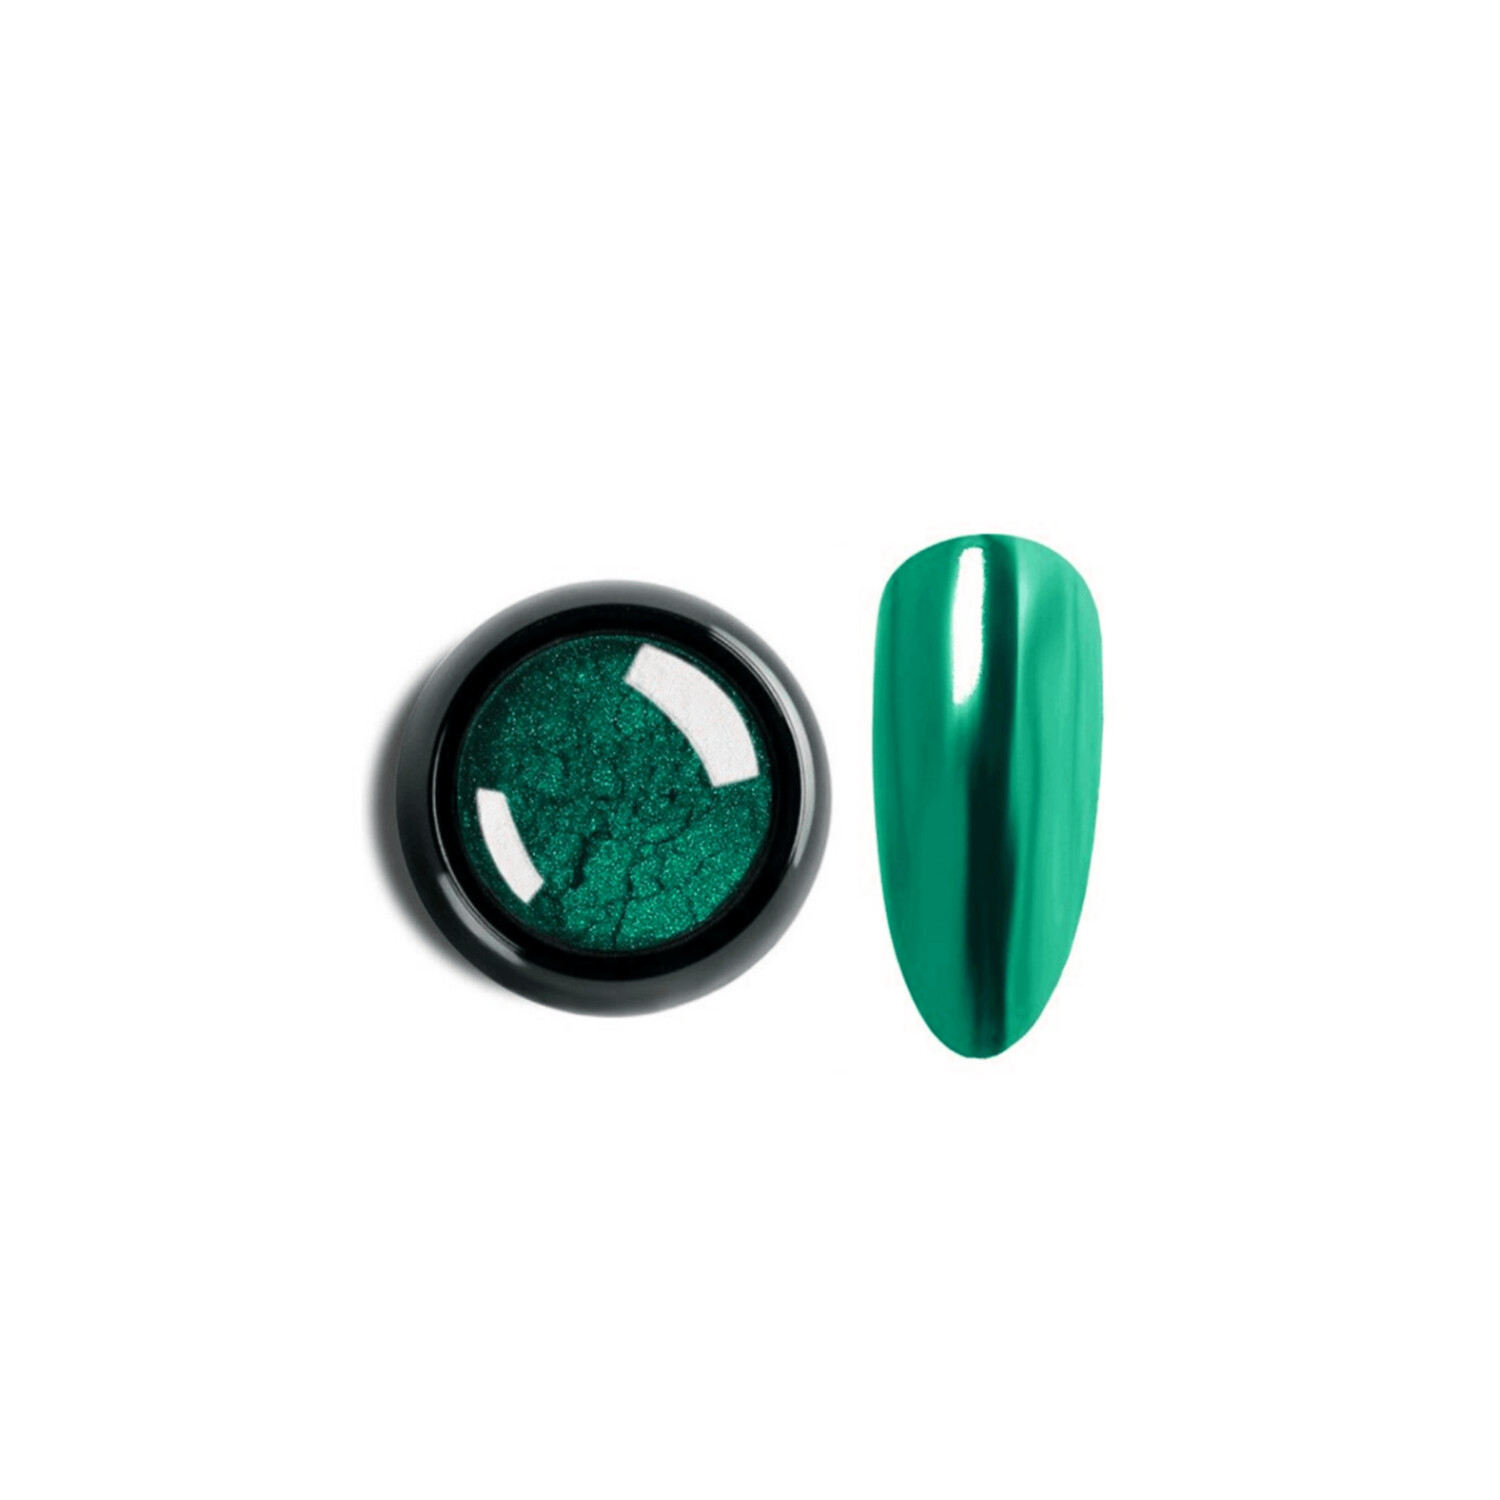 Dust Mirror Polvo Espejo para Uñas 1g color Verde Jade